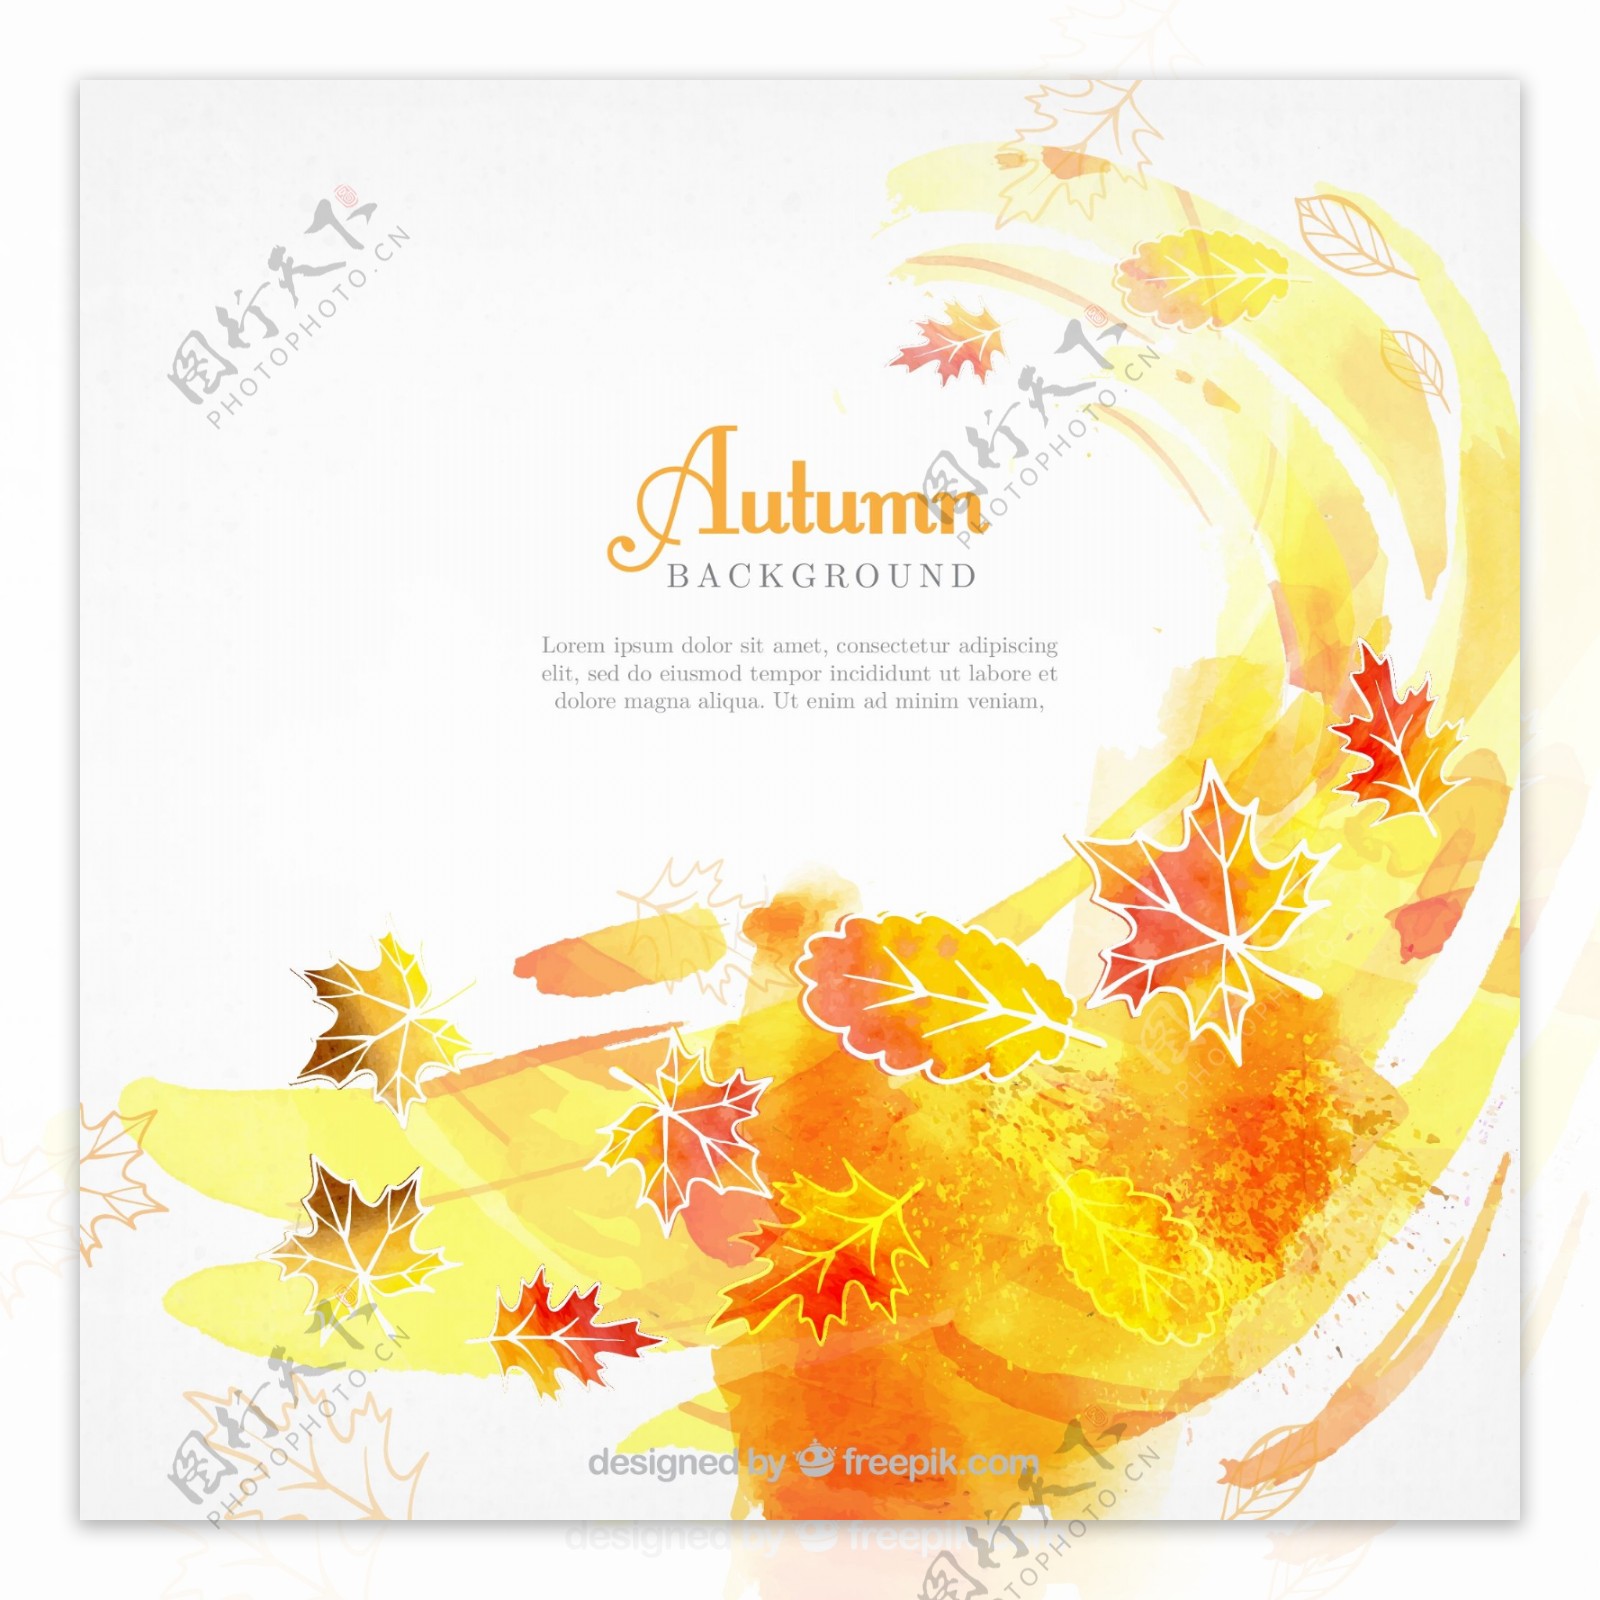 水彩画的秋天的背景与抽象风格